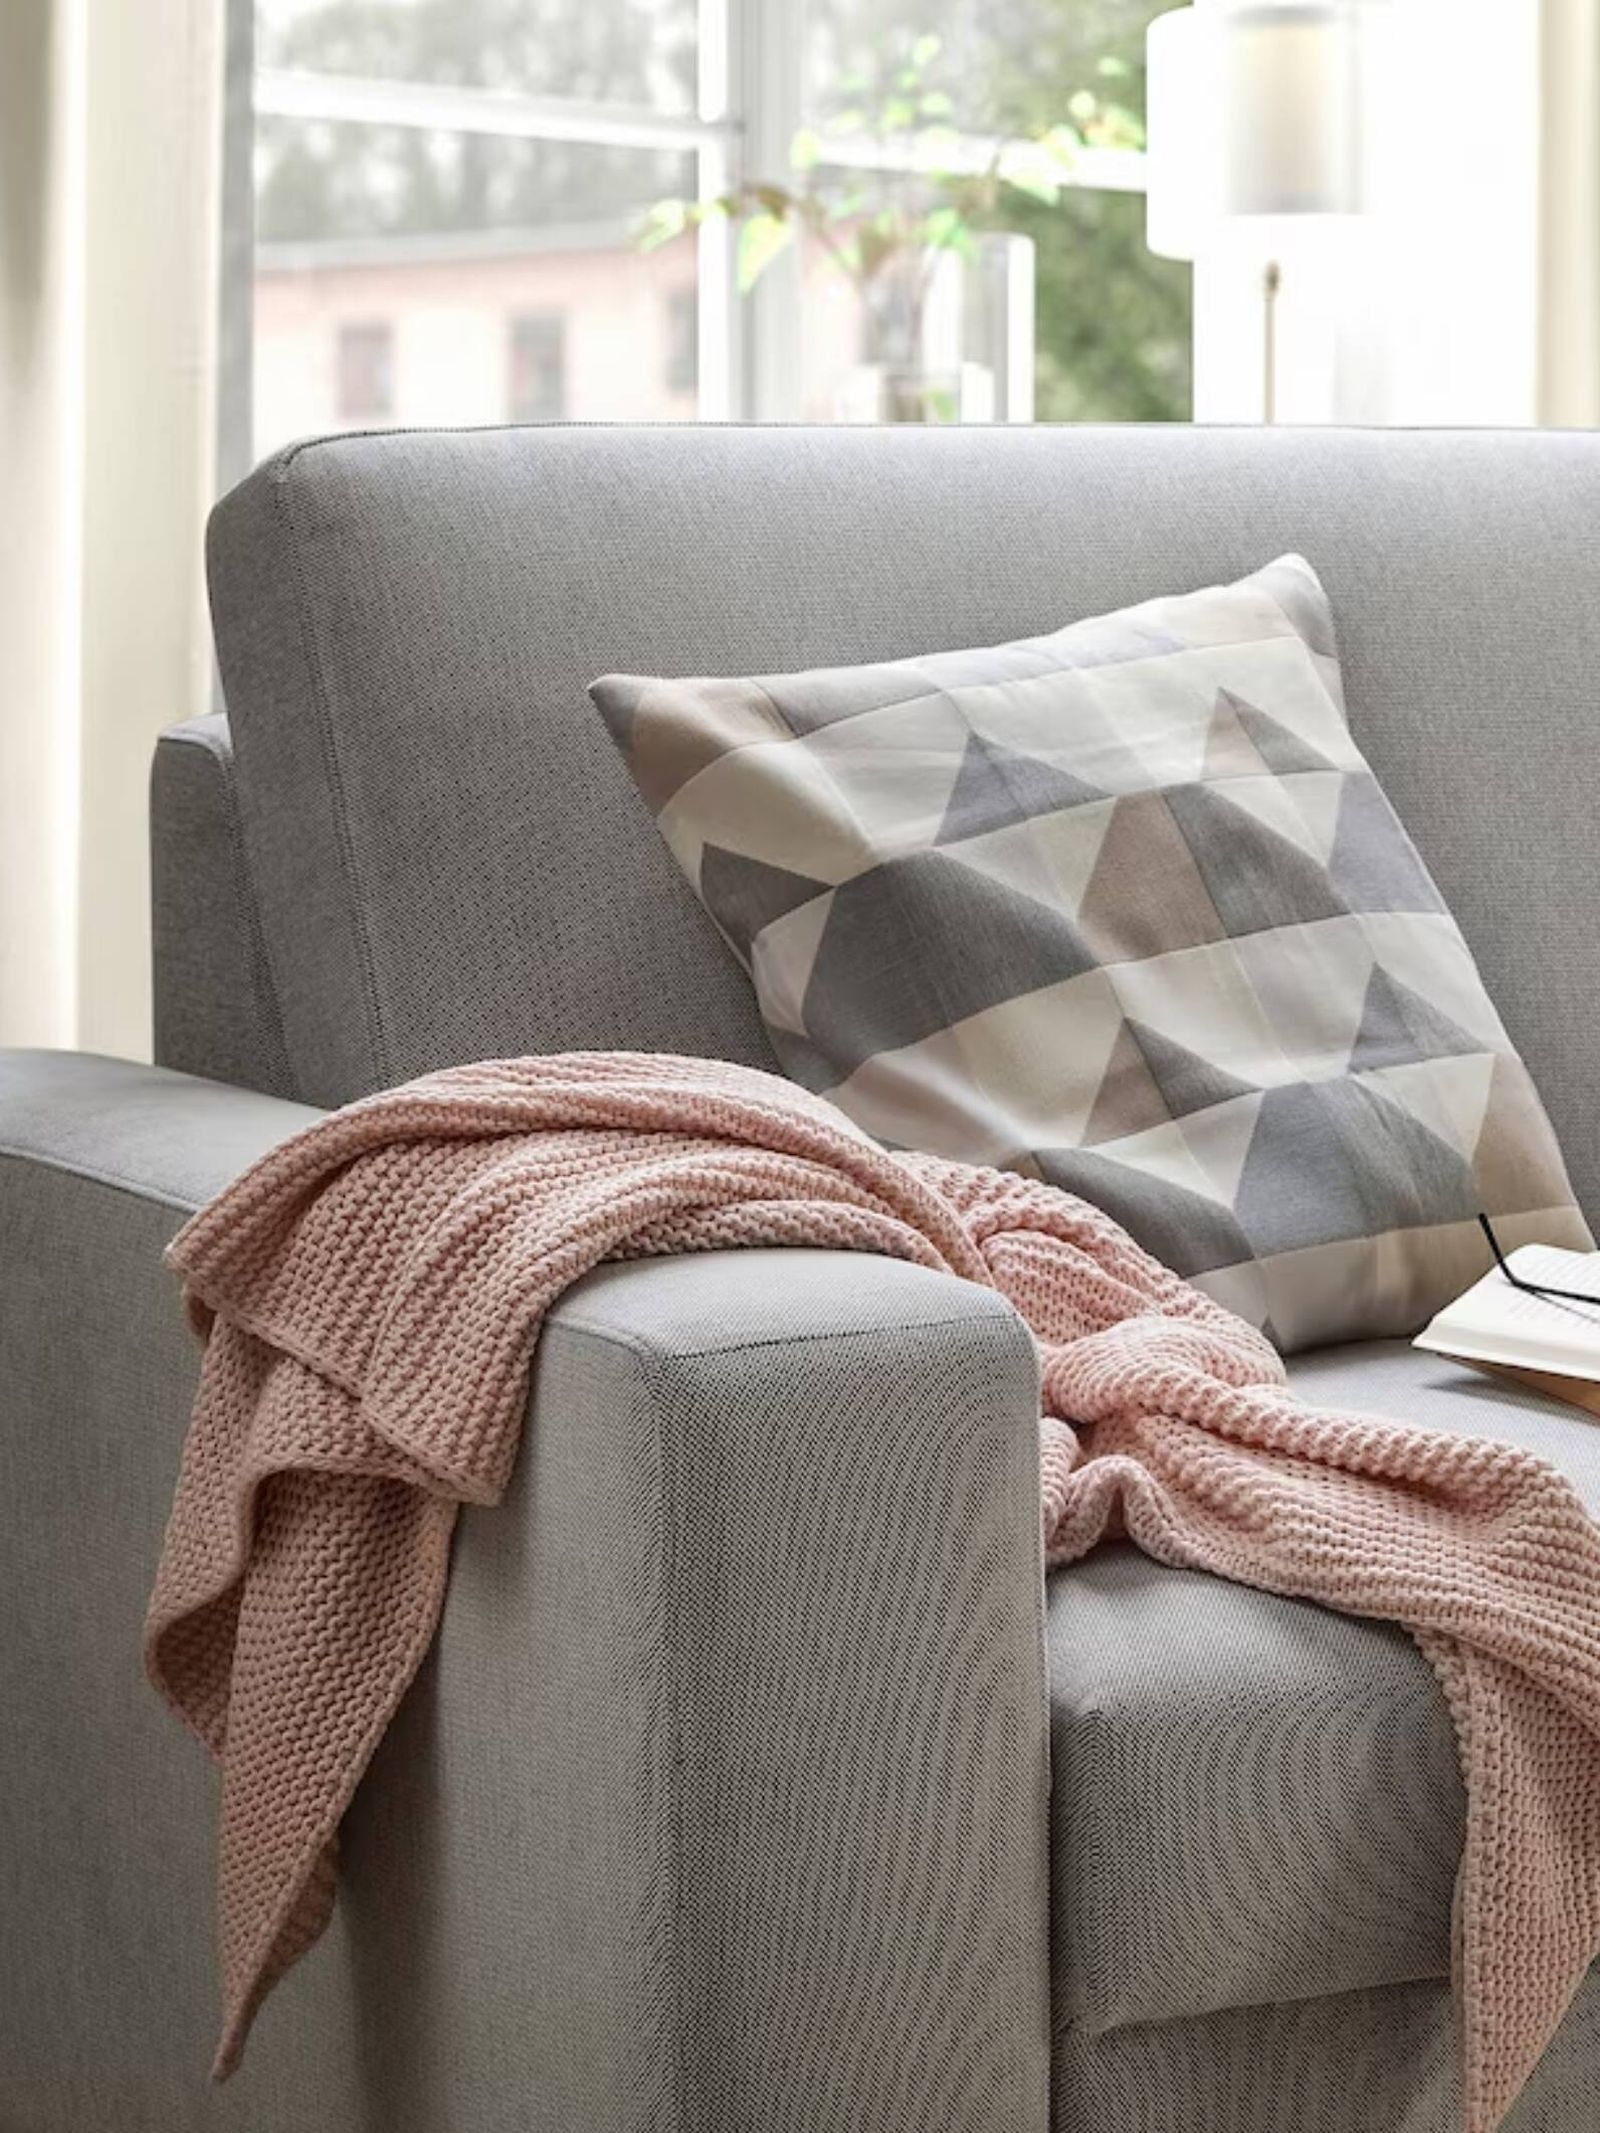 Un cojín en tonos tierra sobre un sofá de color gris. (Cortesía/Ikea)